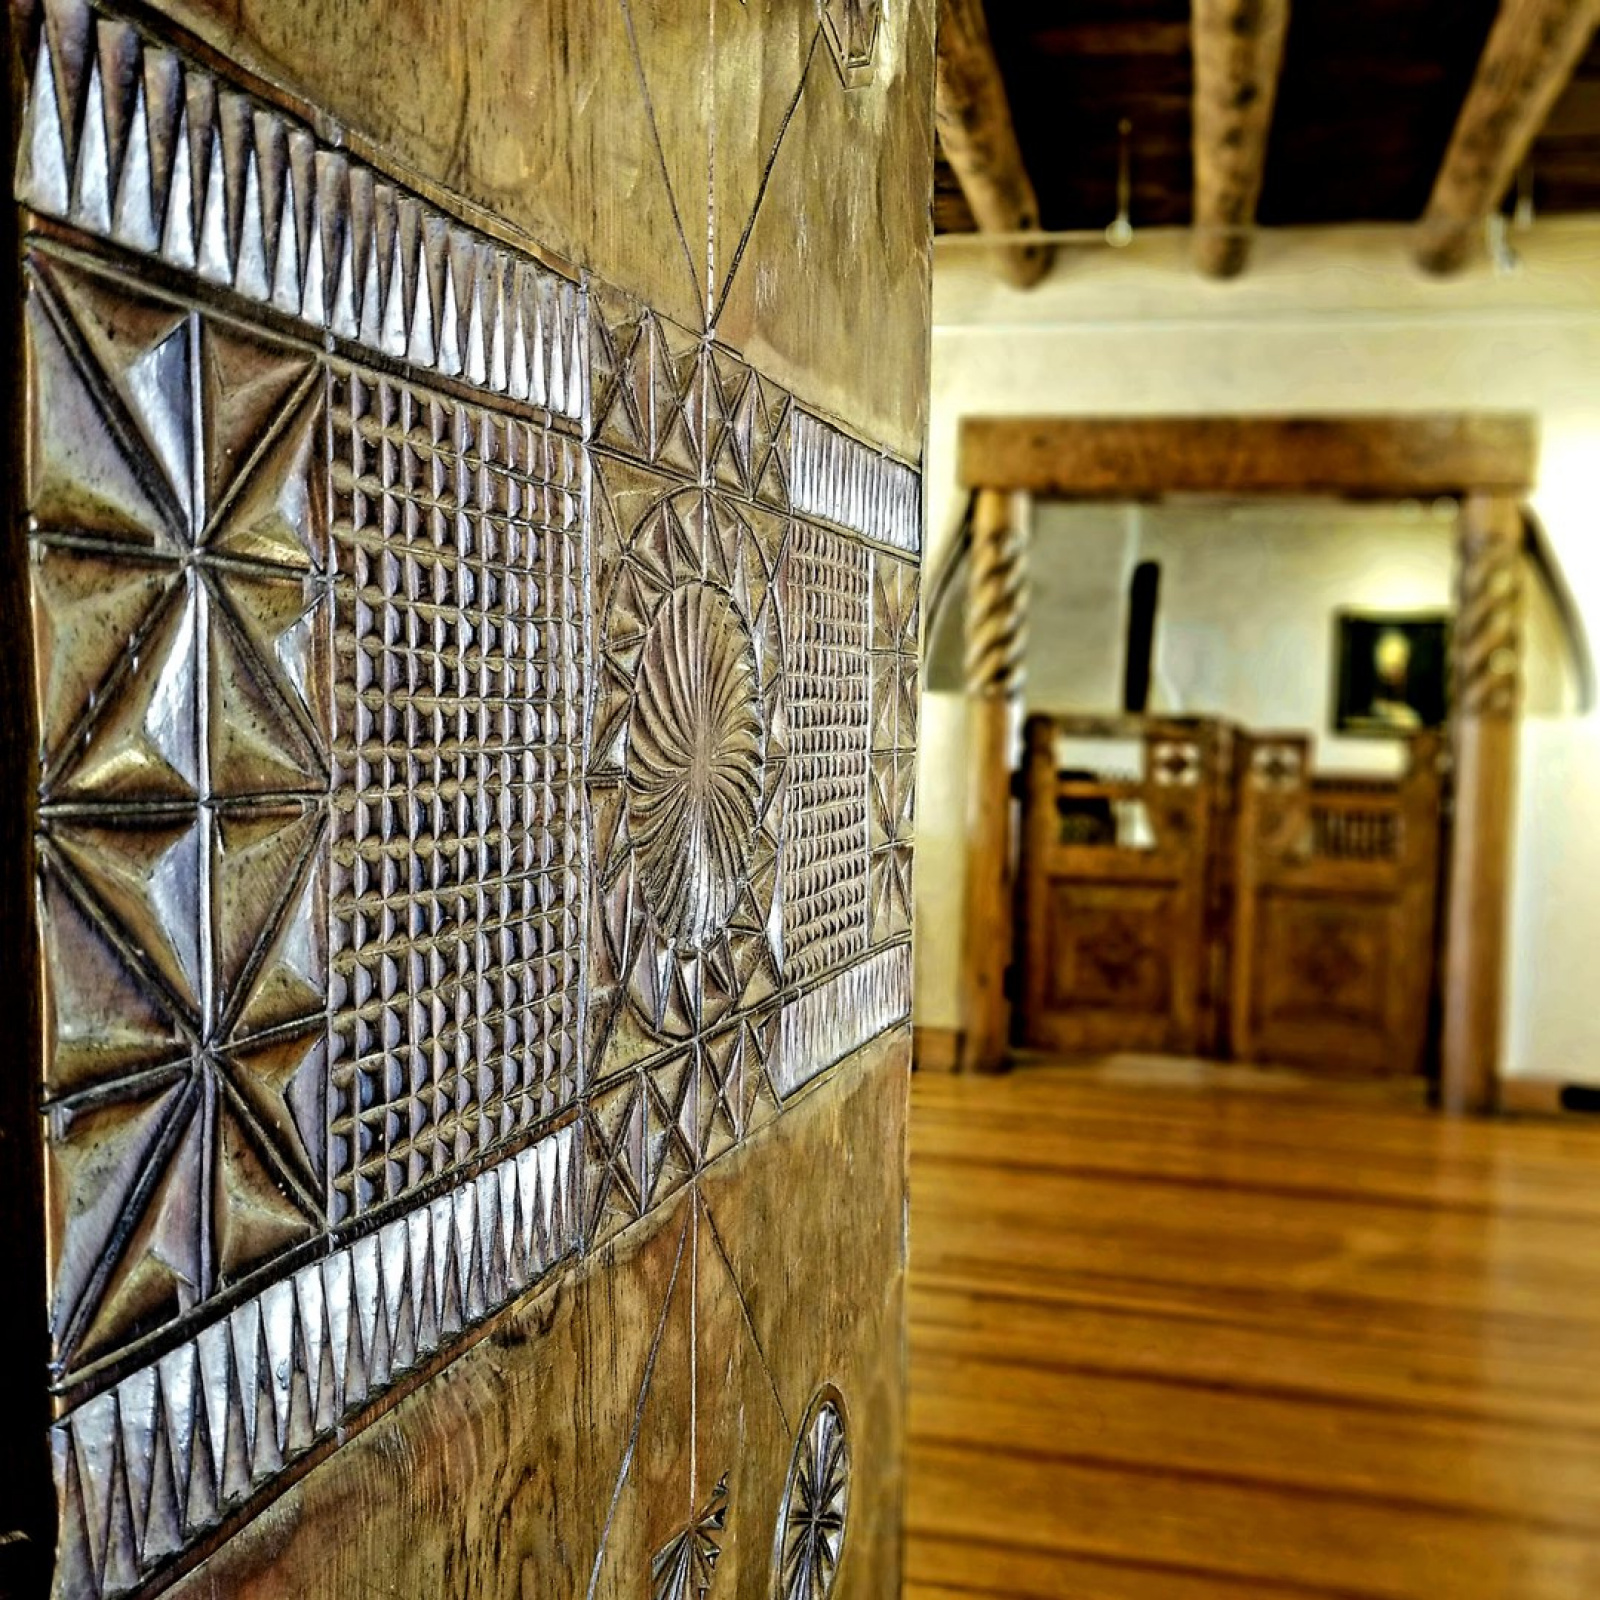 Таос, Нью-Мексико, США. Дом Николая Фешина:
интерьеры, подлинные картины, фотографии…
Источник фото 